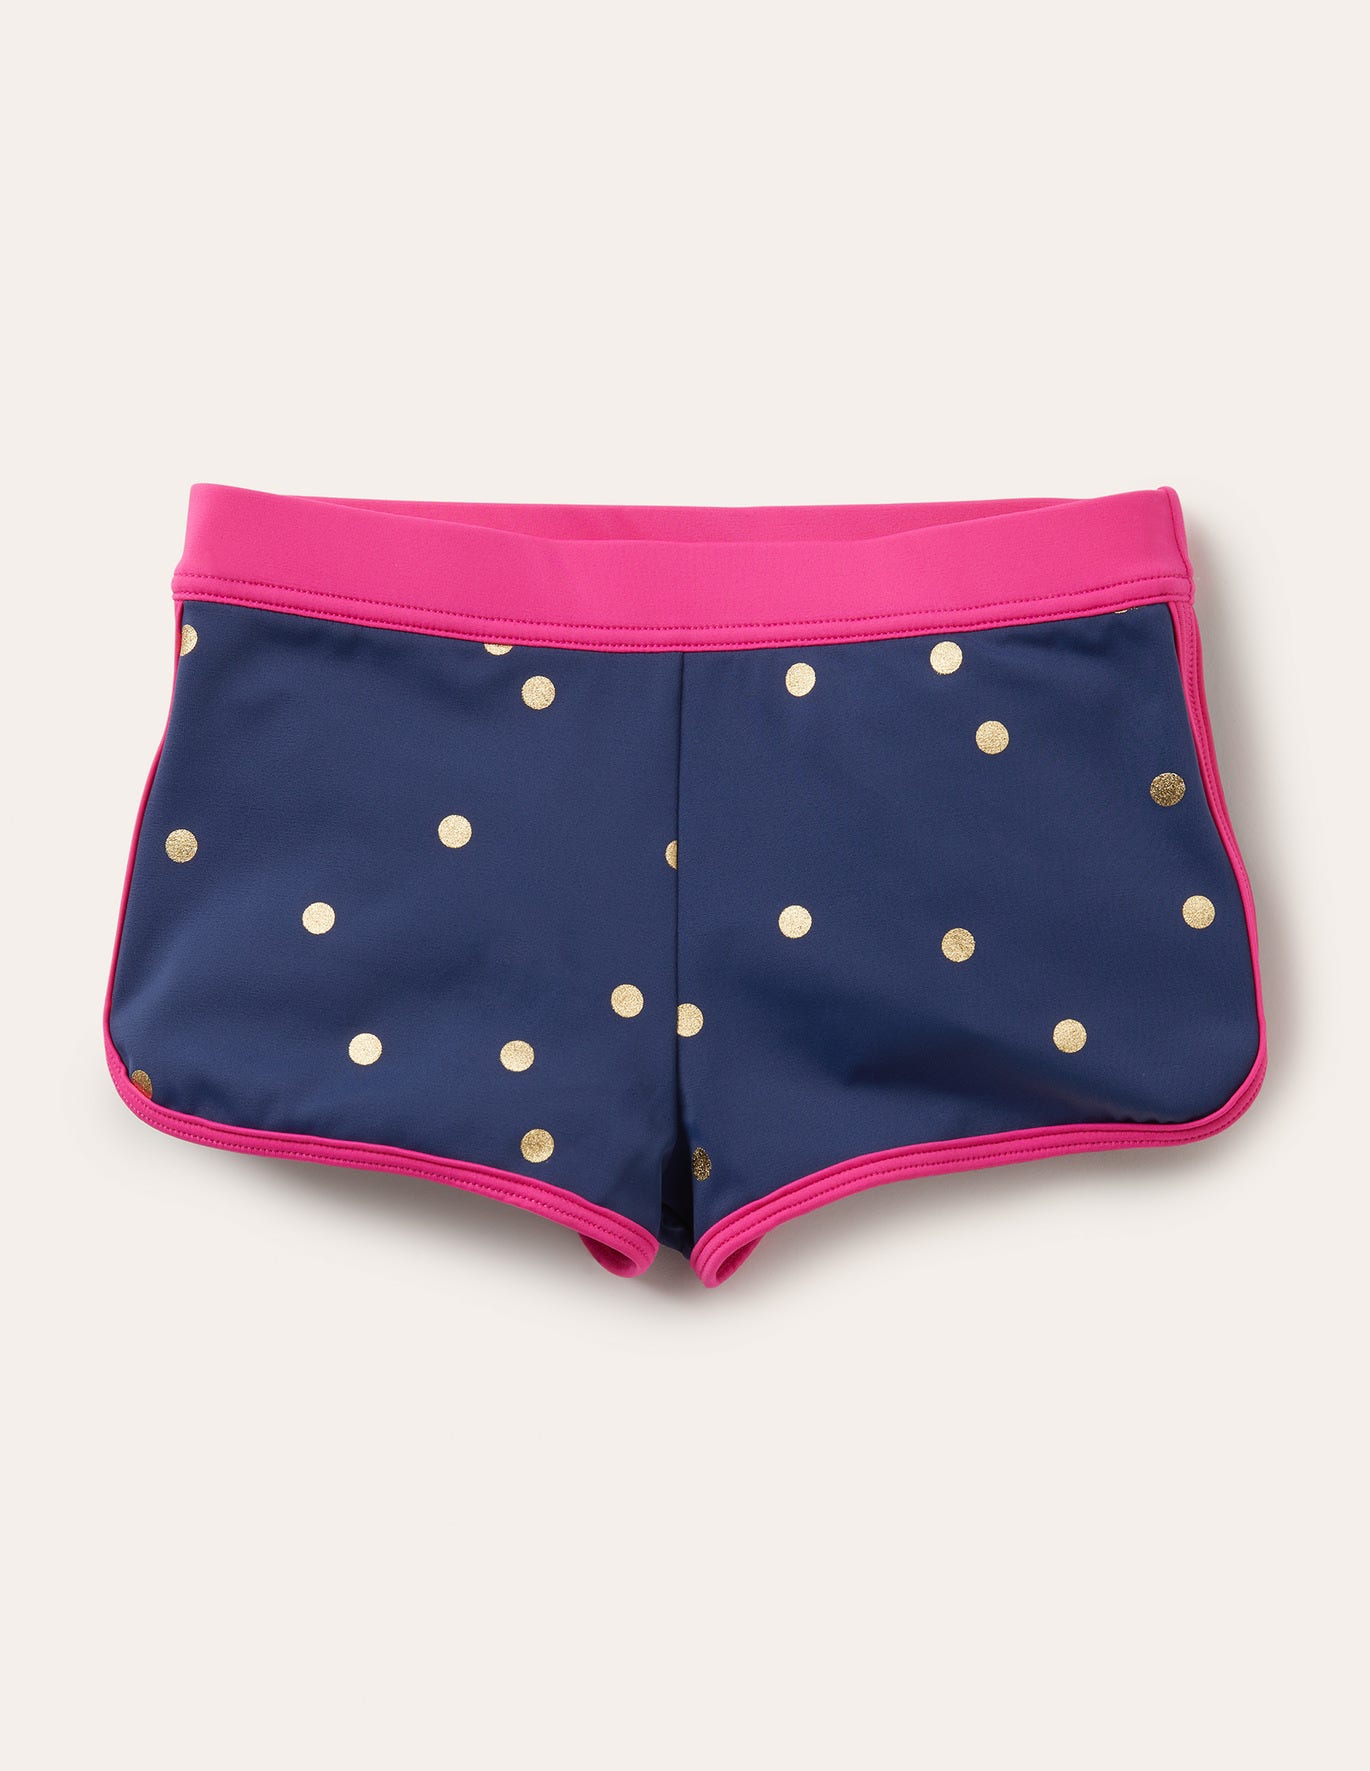 Boden Patterned Swim Shorts - Harmony Blue Gold Spot